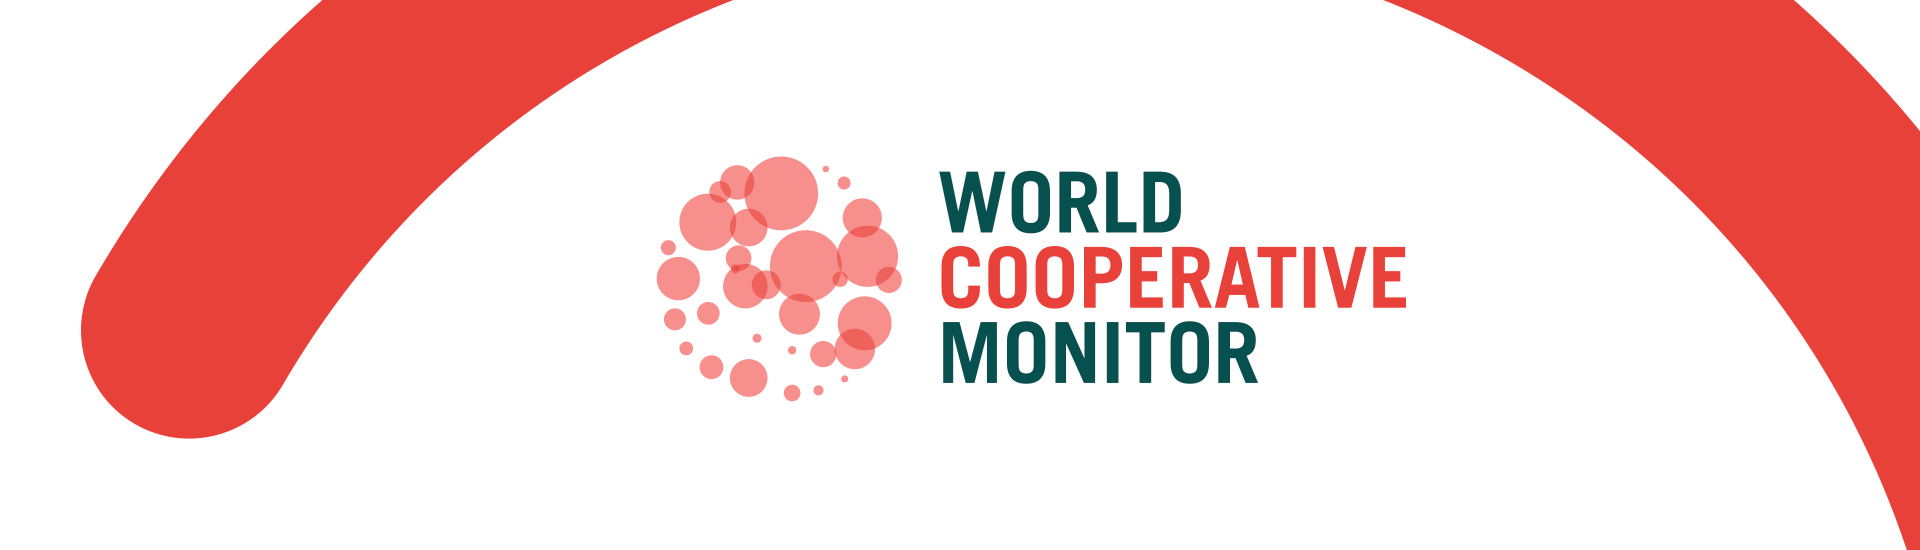 O impacto do cooperativismo frente à COVID e à ação climática.